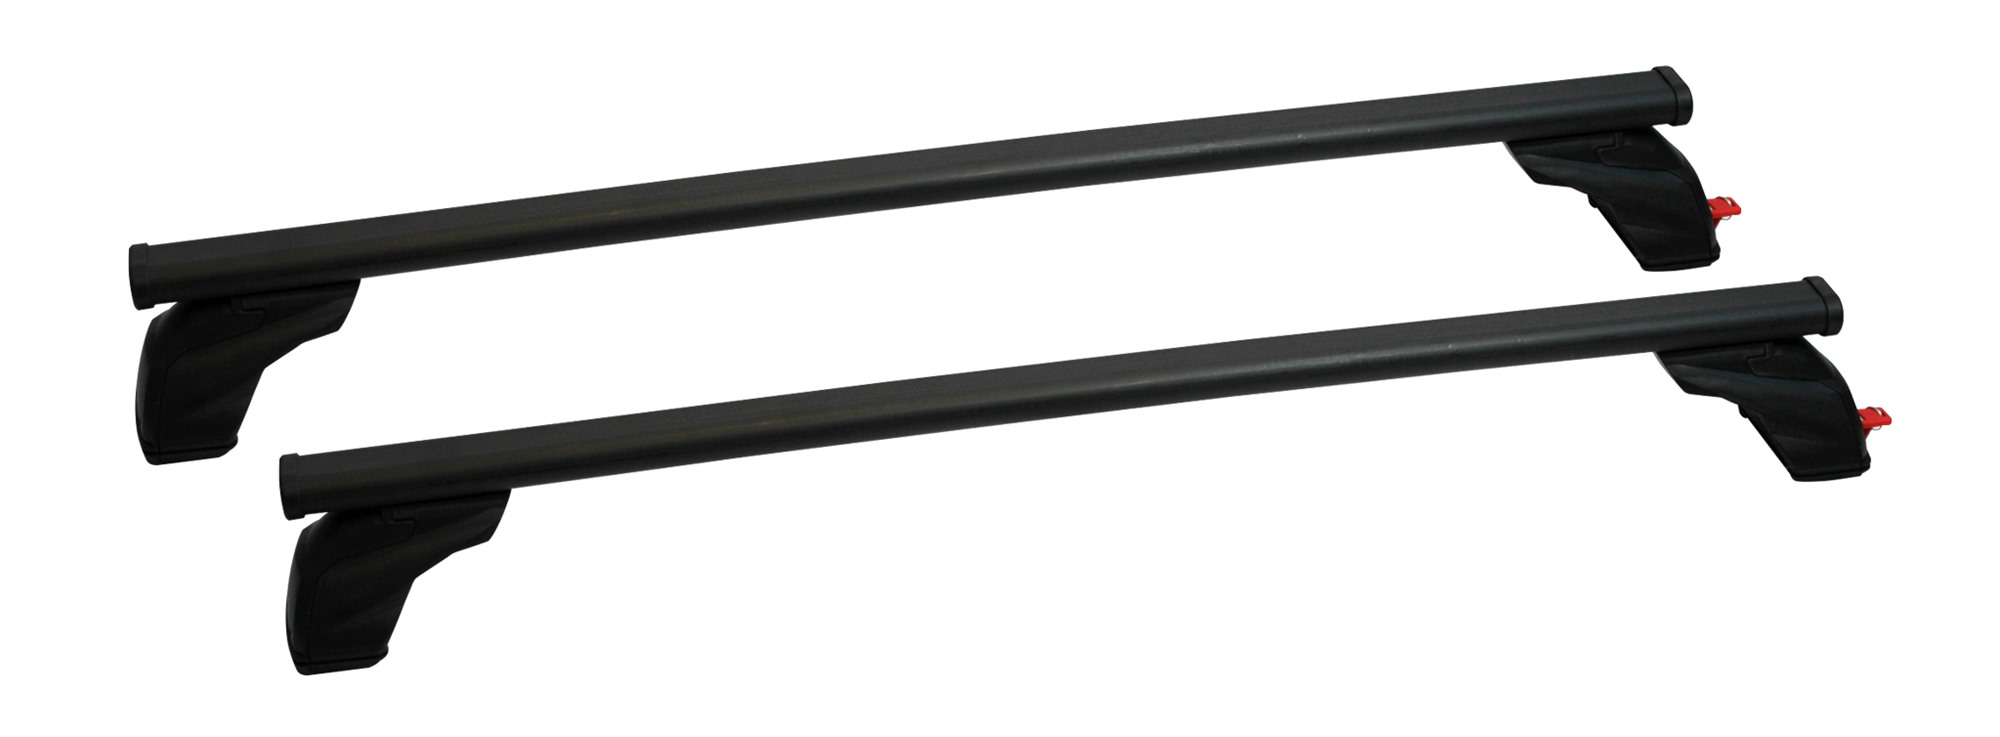 Σετ Μπάρες Οροφής Σιδερένιες με τα ποδια 127εκ για Acura TSX 4D 2009-2014 2τμχ Pacific G3